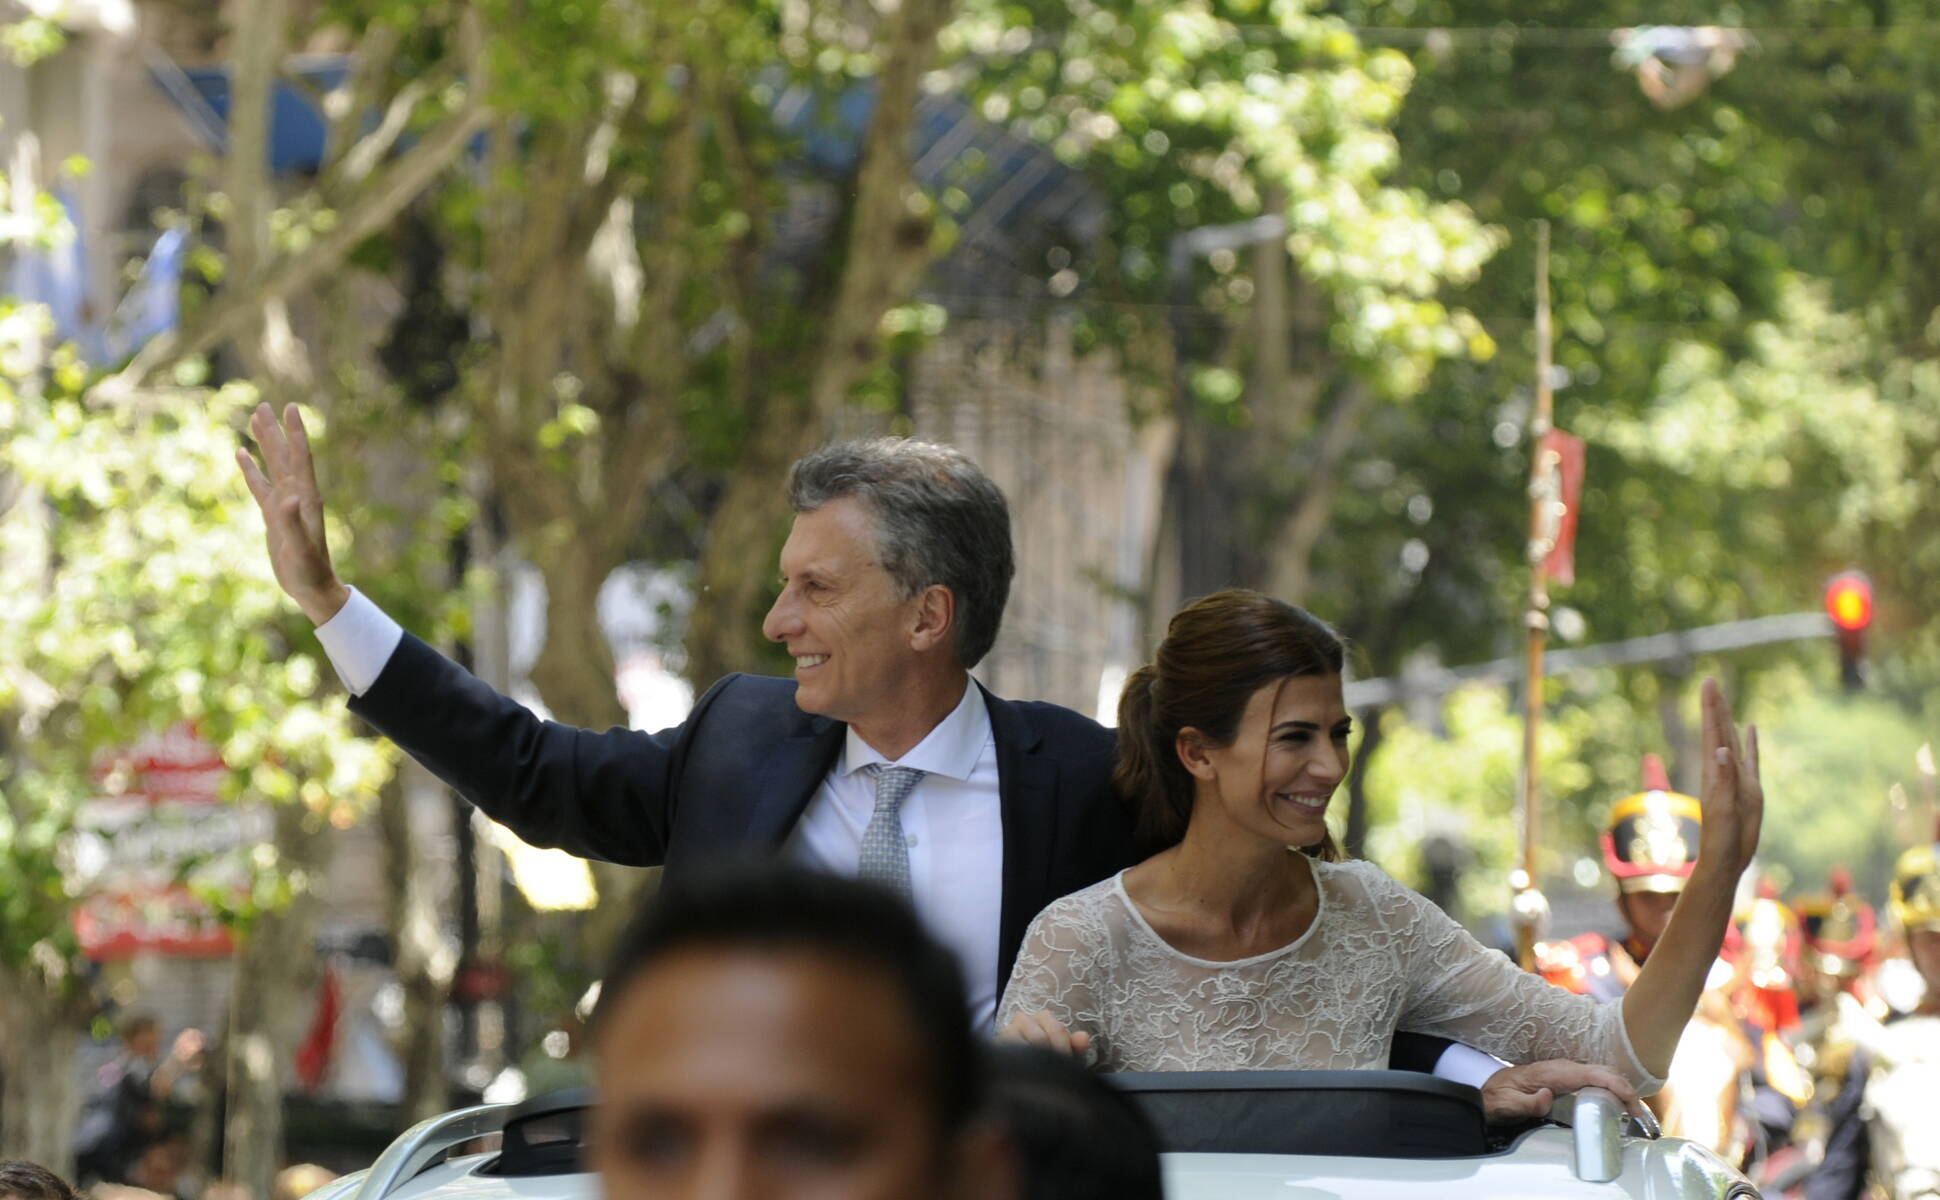 El Presidente y la primera dama saludan durante el trayecto a Casa Rosada.